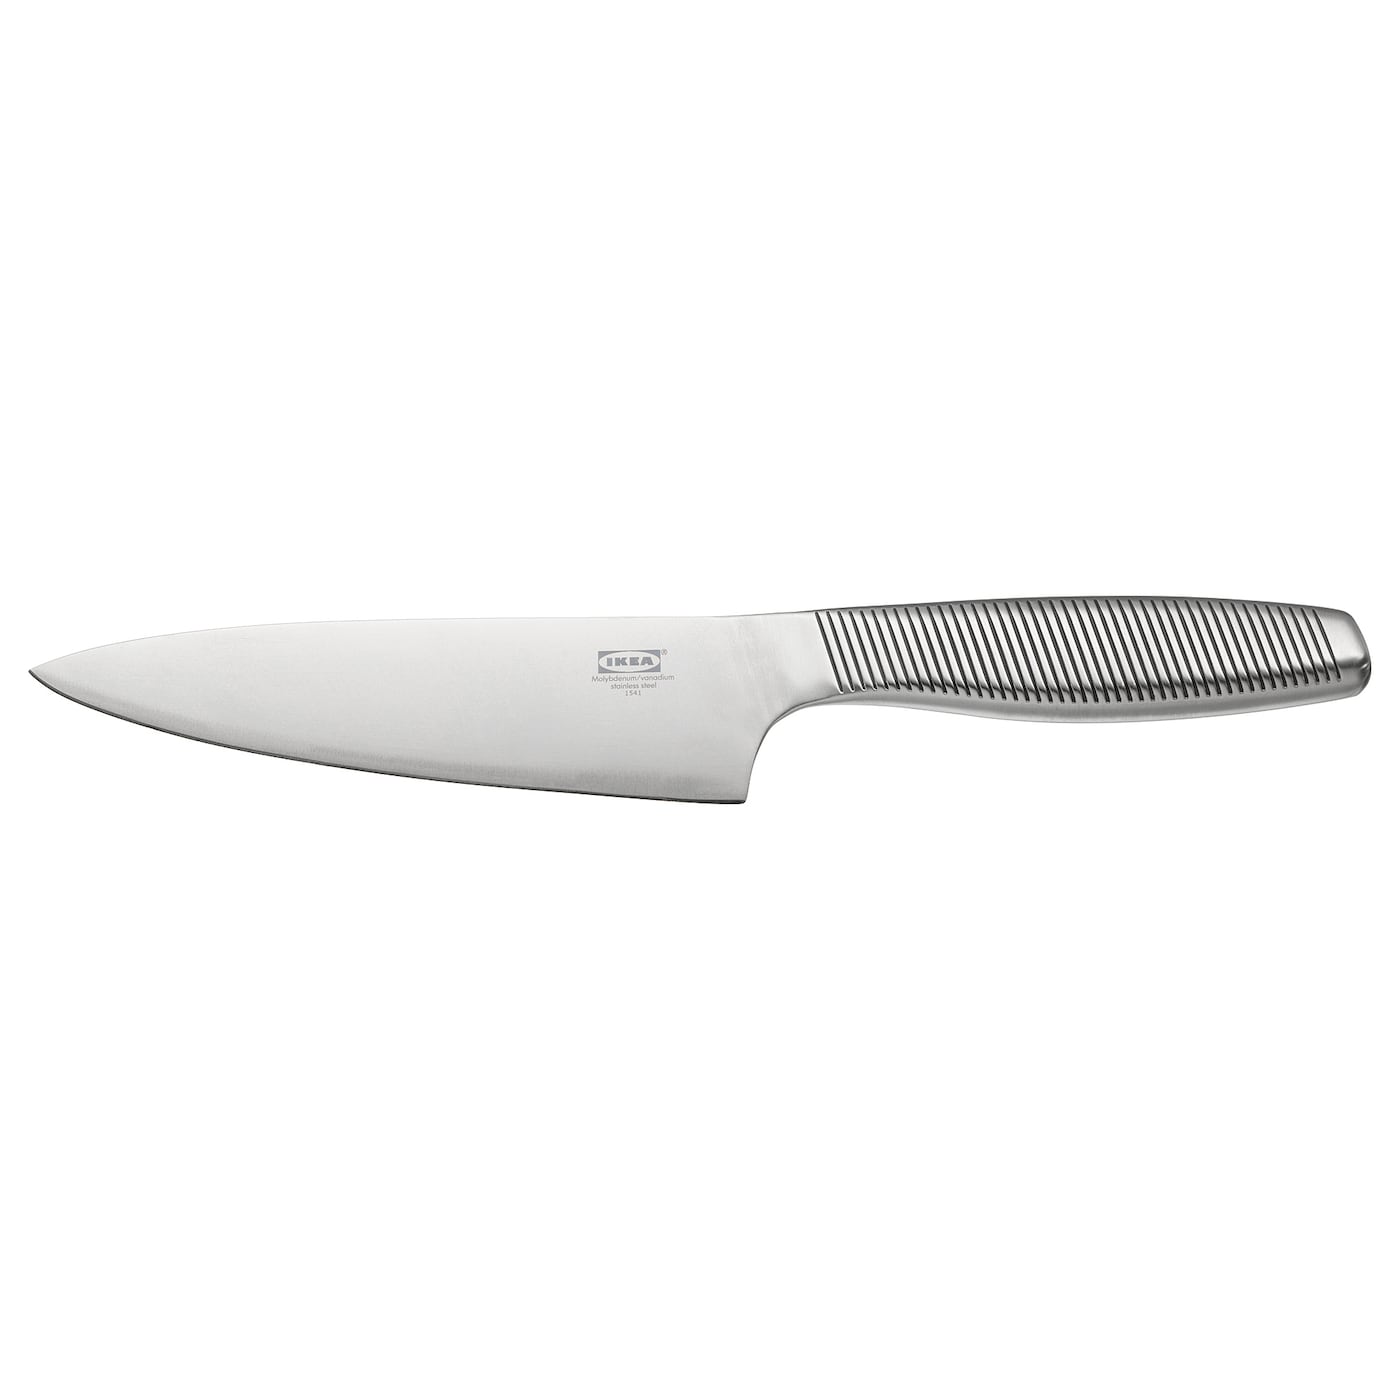 IKEA 365+ ИКЕА/365+ Нож поварской, нержавеющ сталь, 16 см IKEA нож ikea 365 23 см серебряный